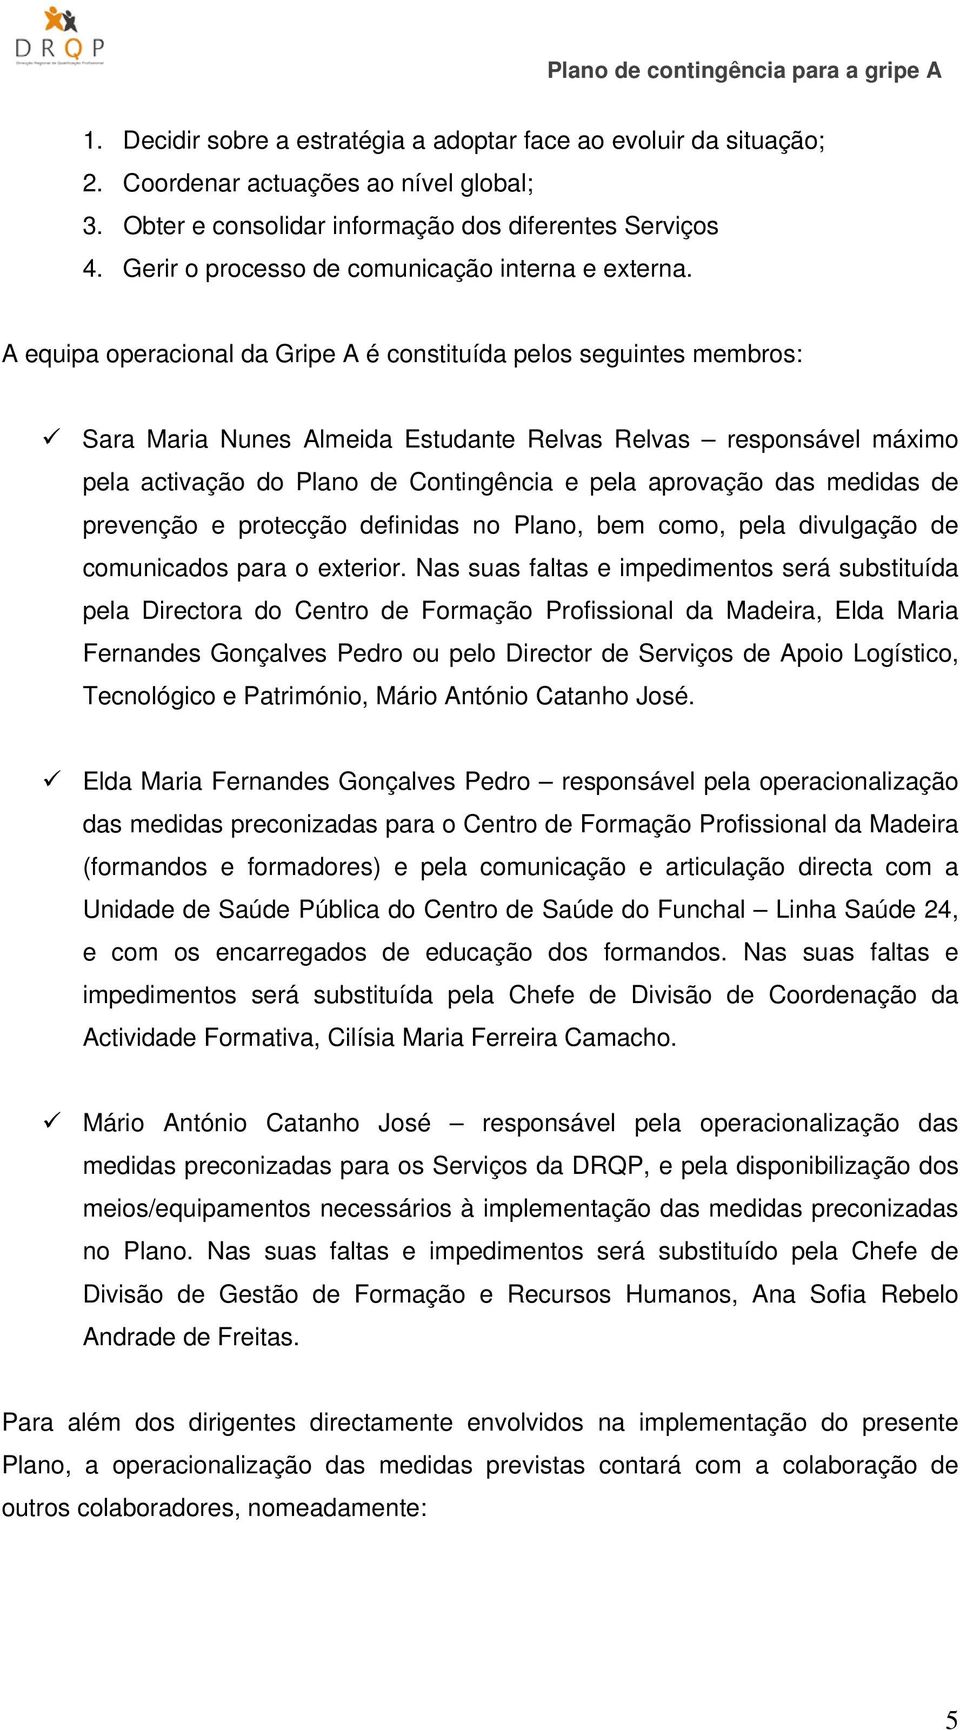 A equipa operacional da Gripe A é constituída pelos seguintes membros: Sara Maria Nunes Almeida Estudante Relvas Relvas responsável máximo pela activação do Plano de Contingência e pela aprovação das